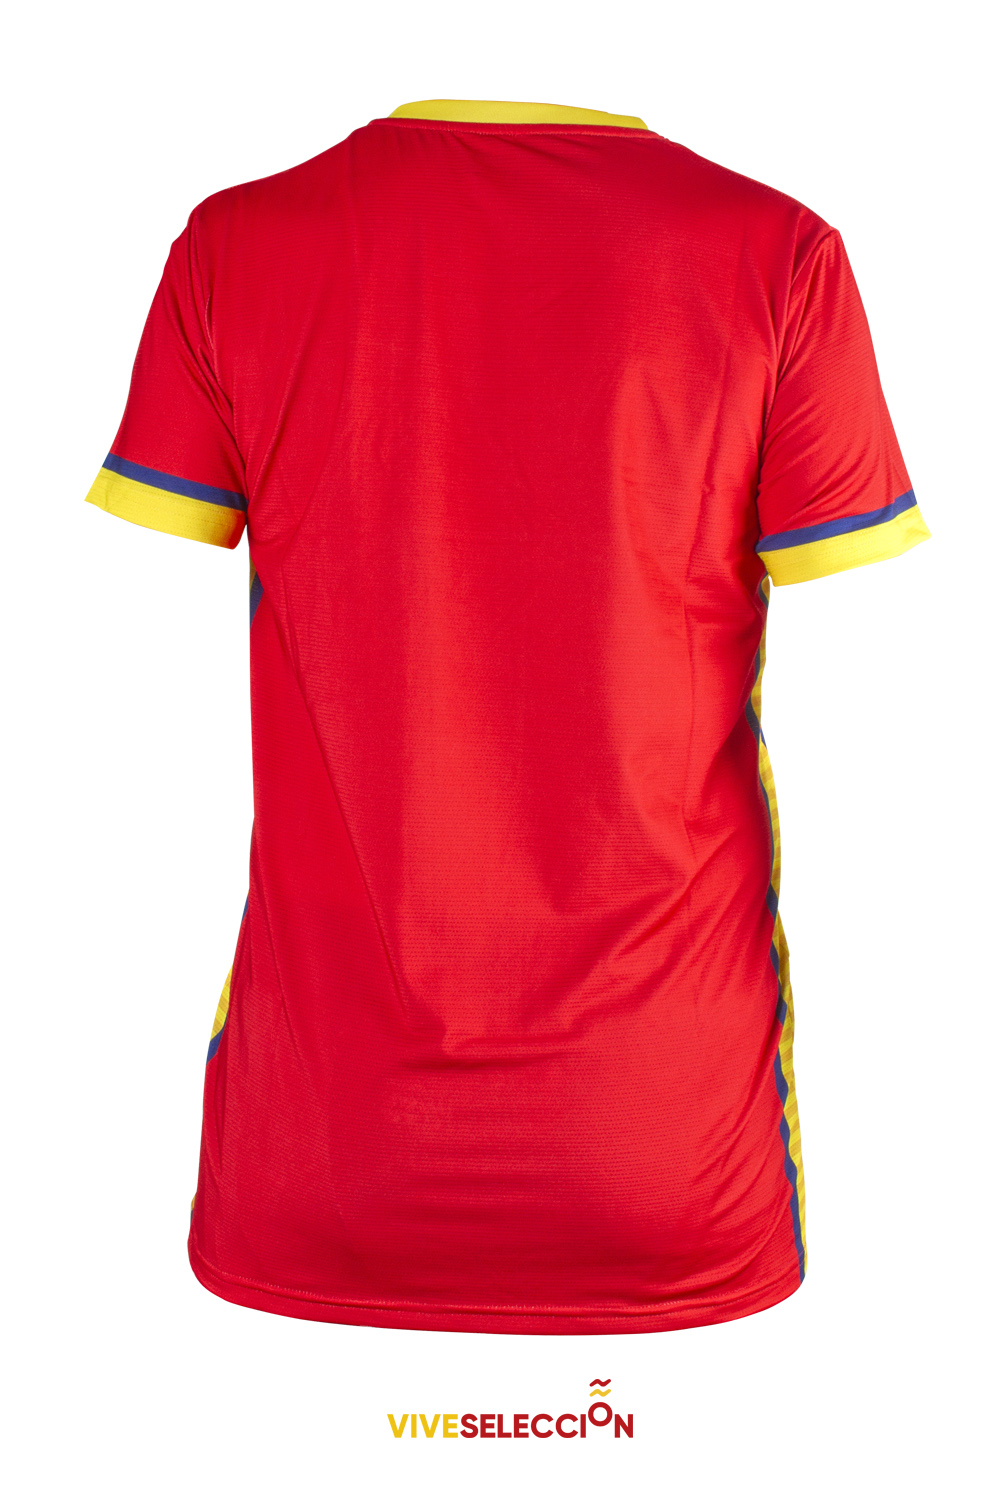 Camiseta selección española de voleibol hombre primera equipación, vista por detrás